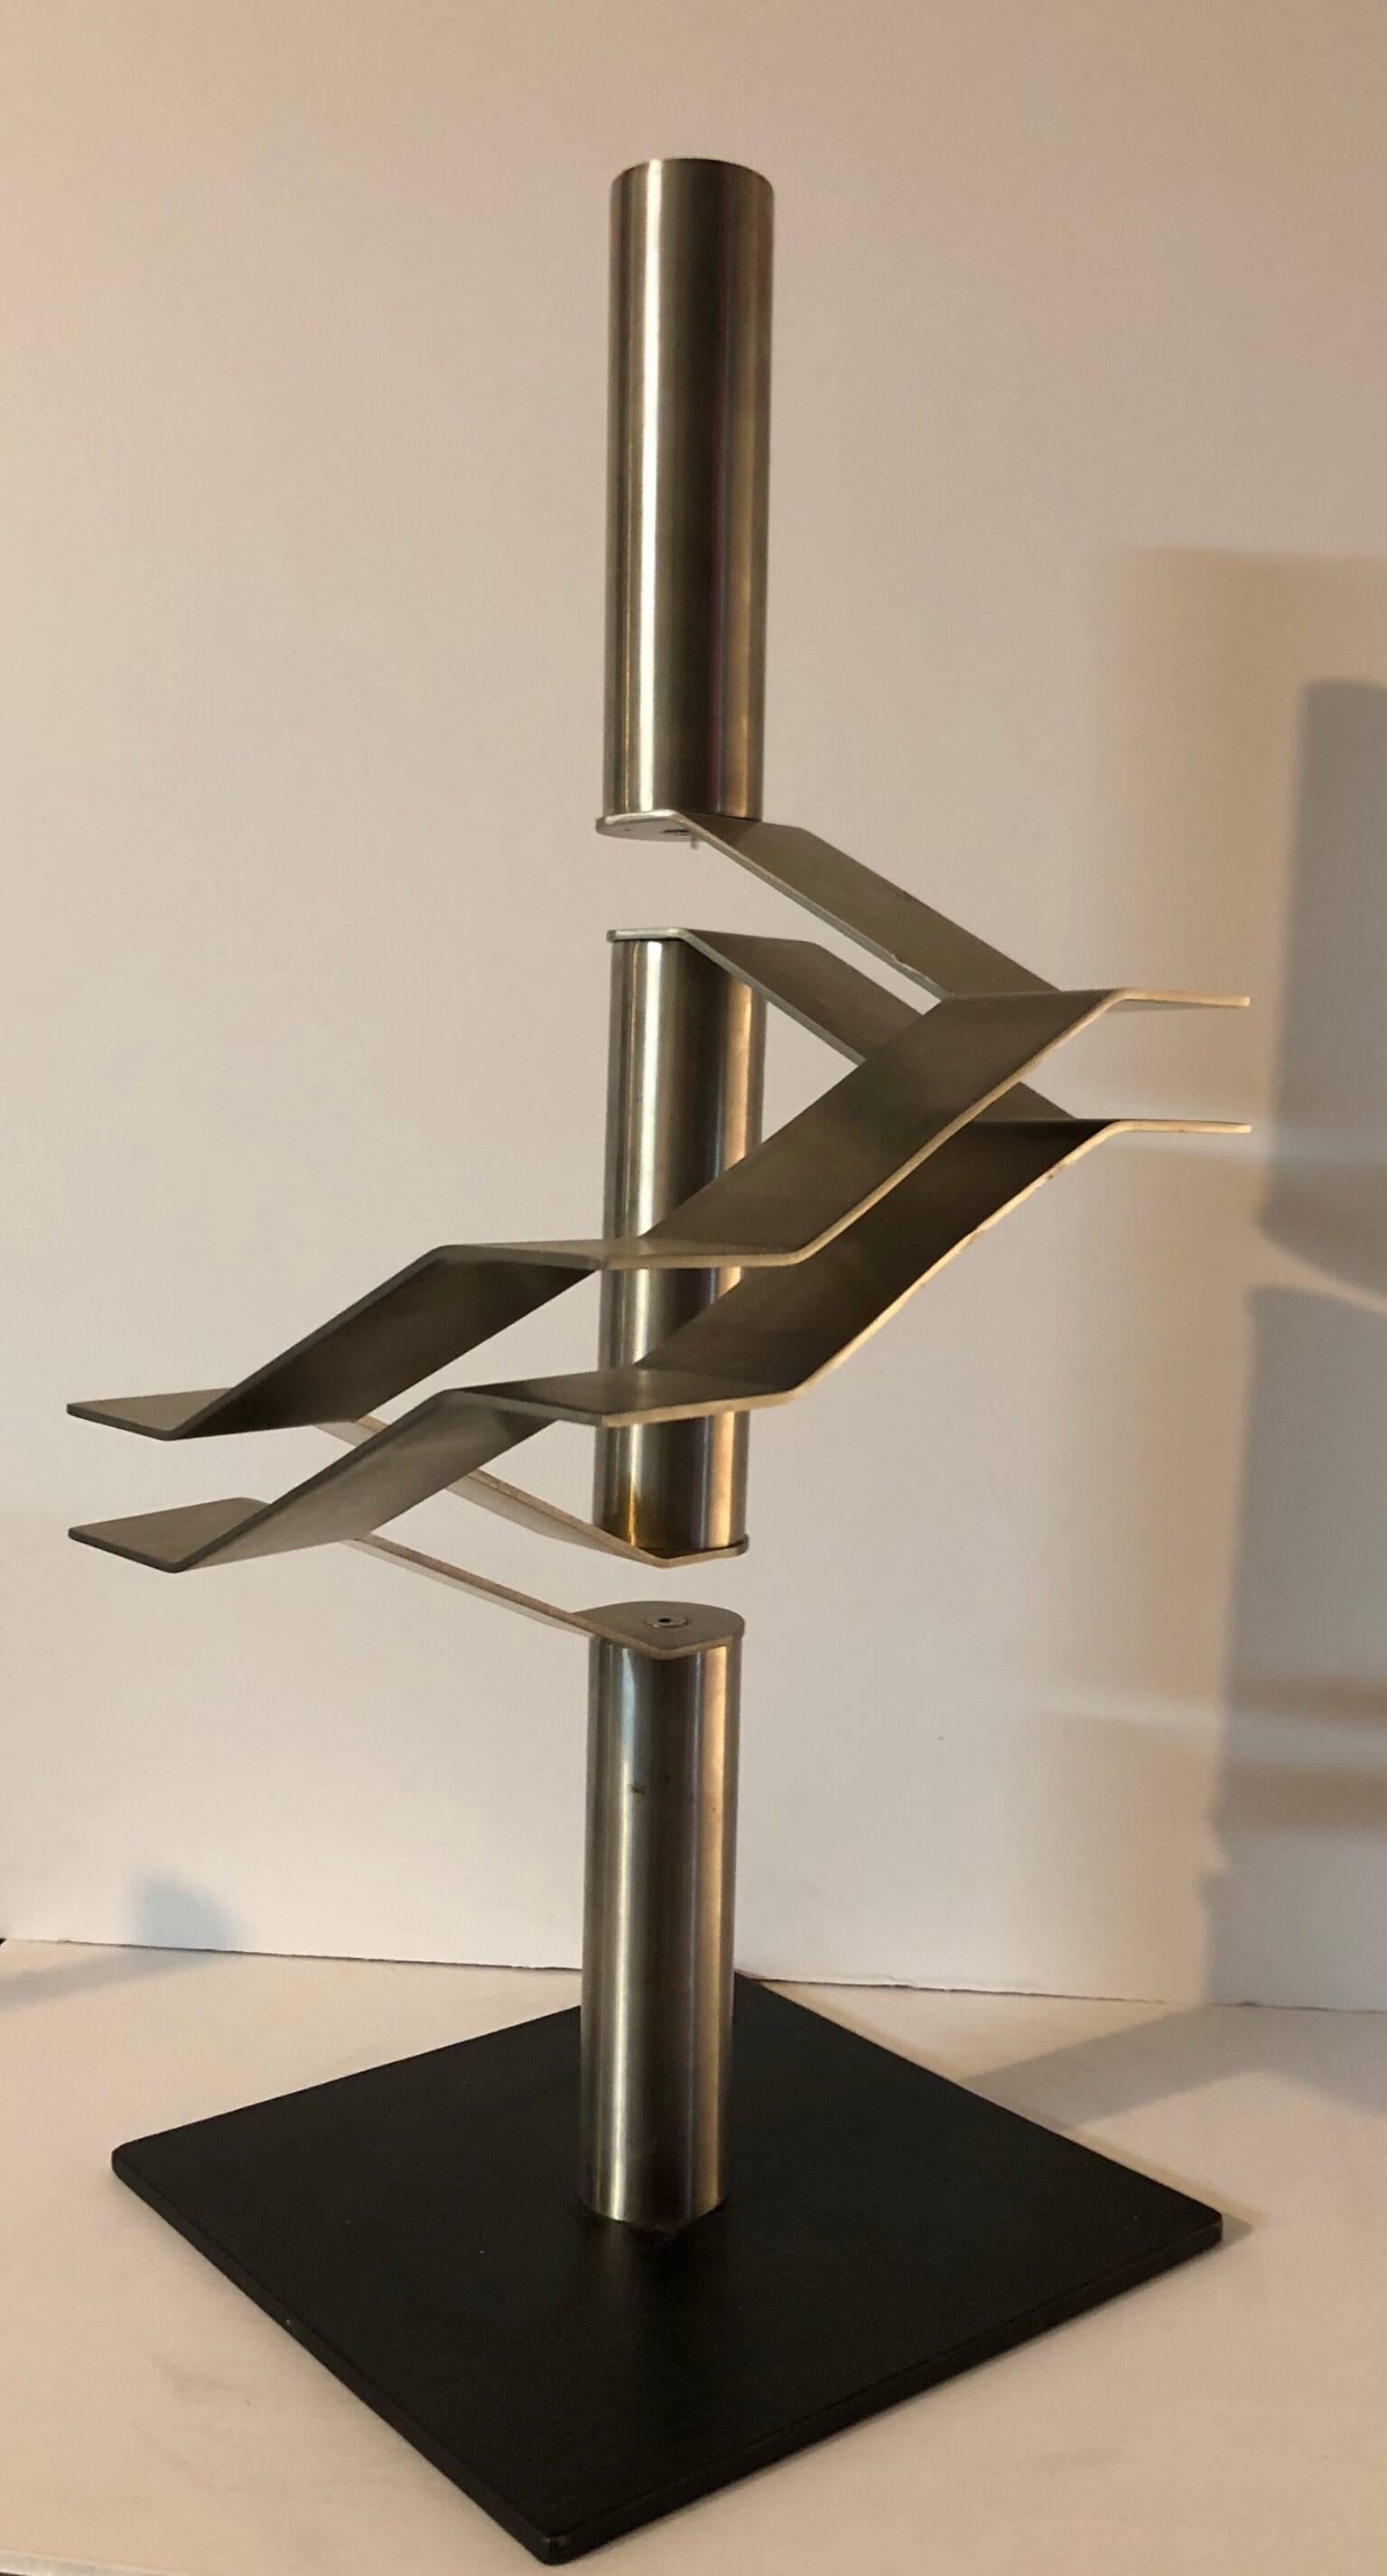 Israel Hadany Abstract Sculpture – Abstrakte israelische Edelstahl-Skulptur „Drei Röhren“ Maquette